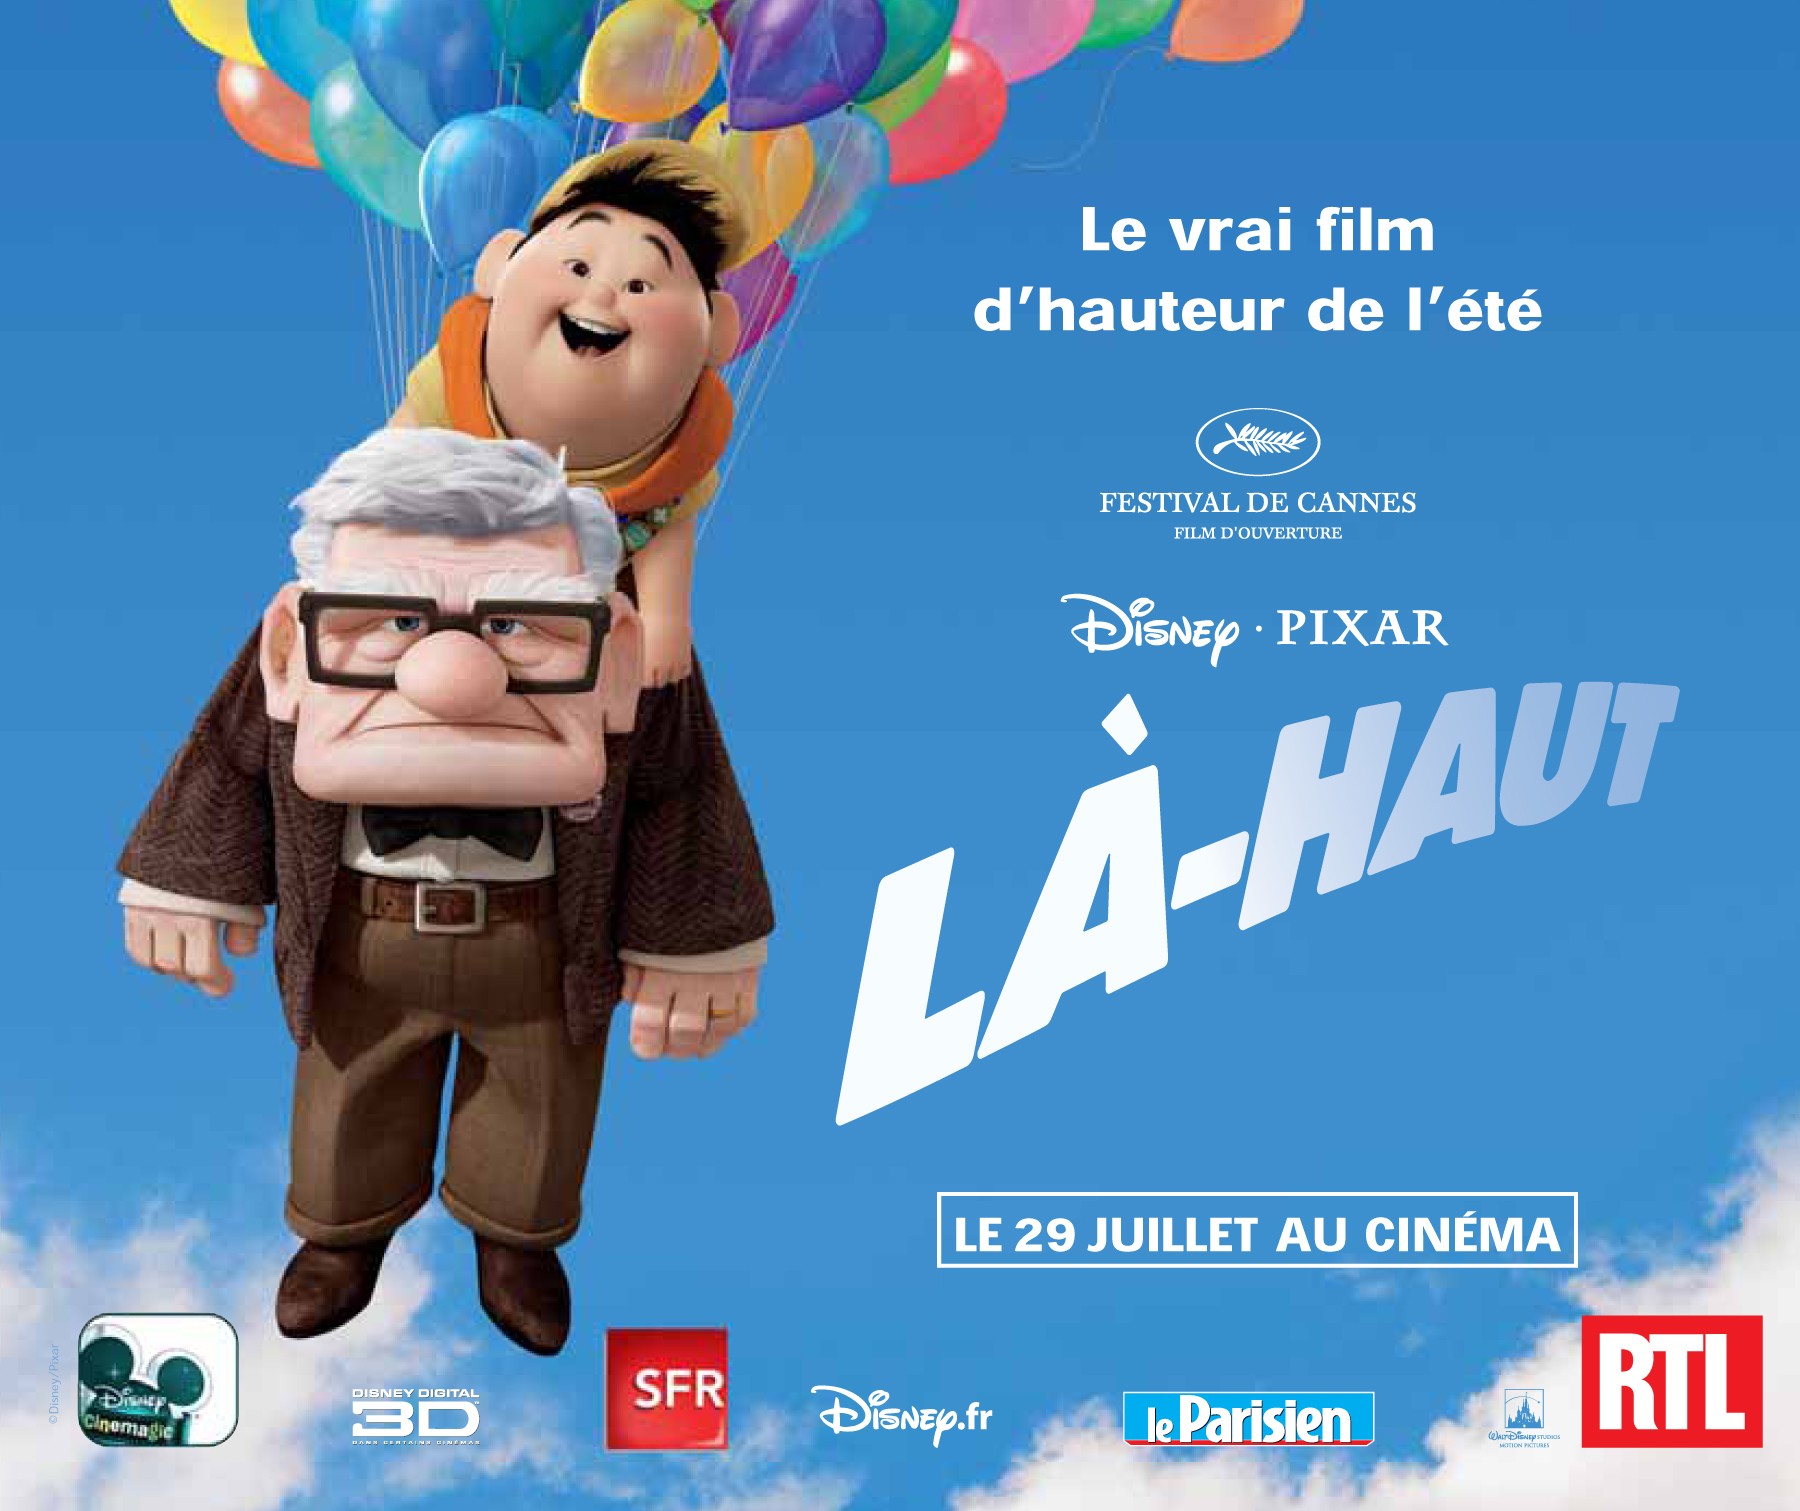 Là Haut, *the* movie.